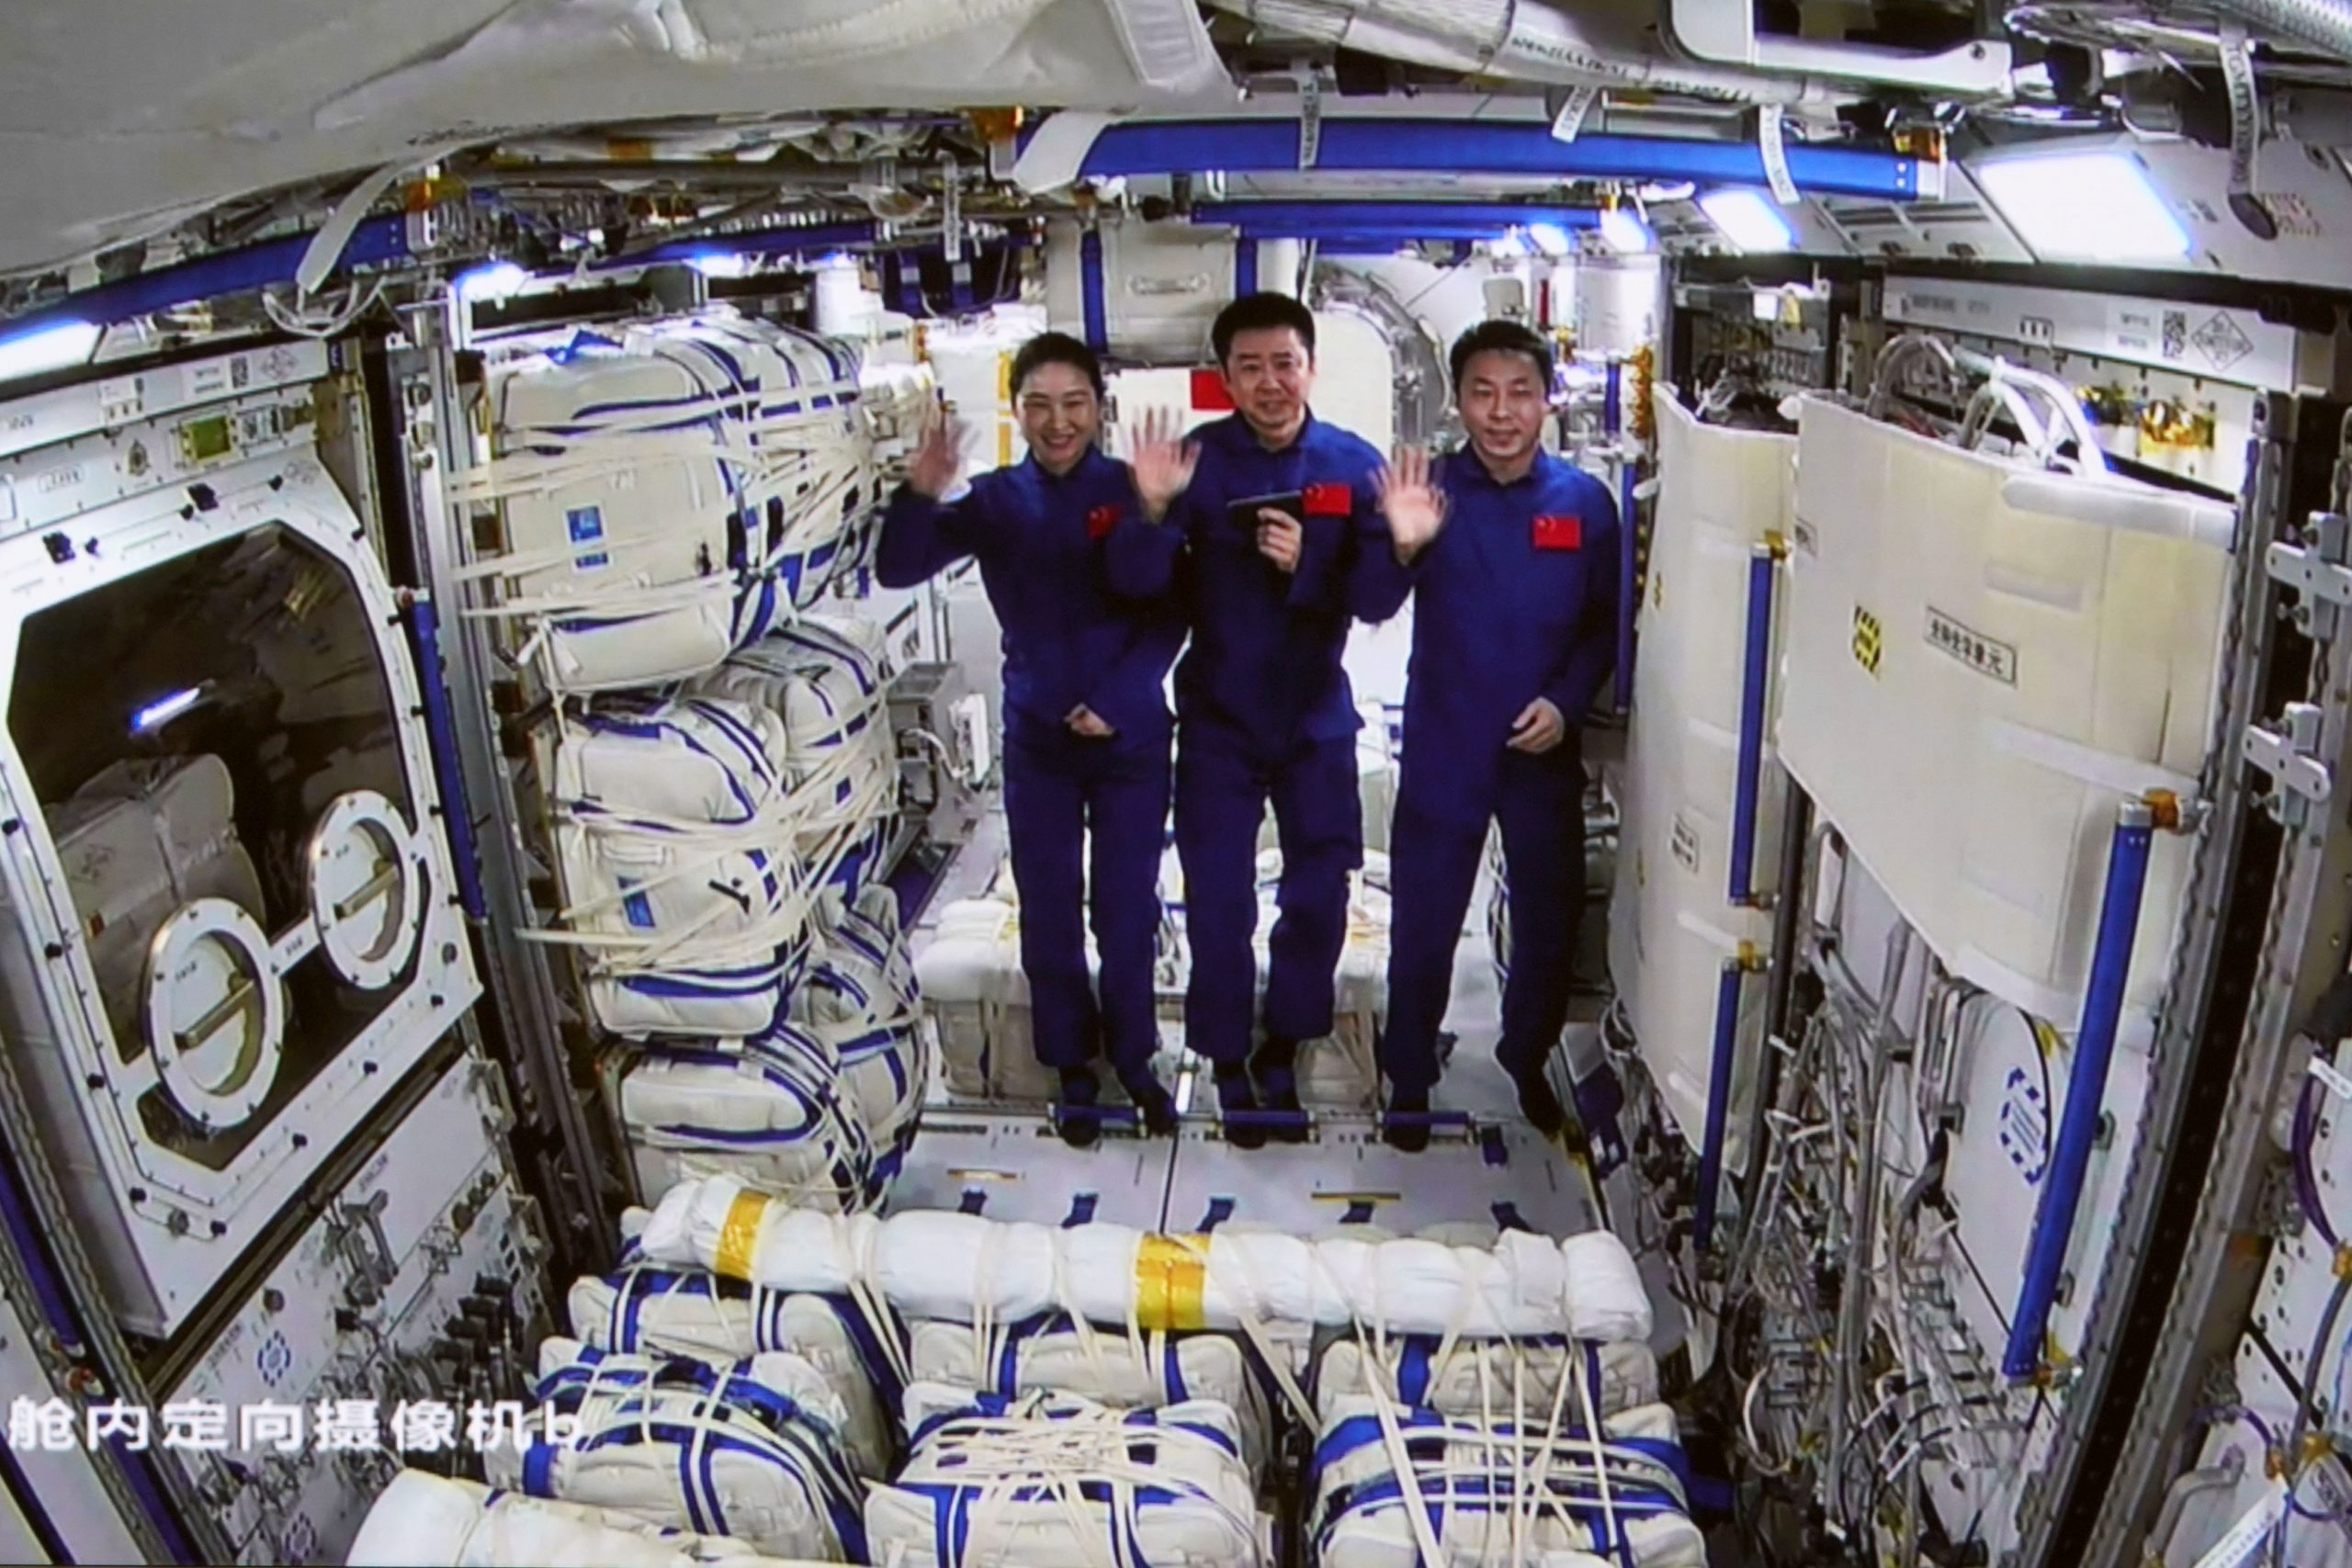  神舟14号太空人乘组顺利进入梦天实验舱